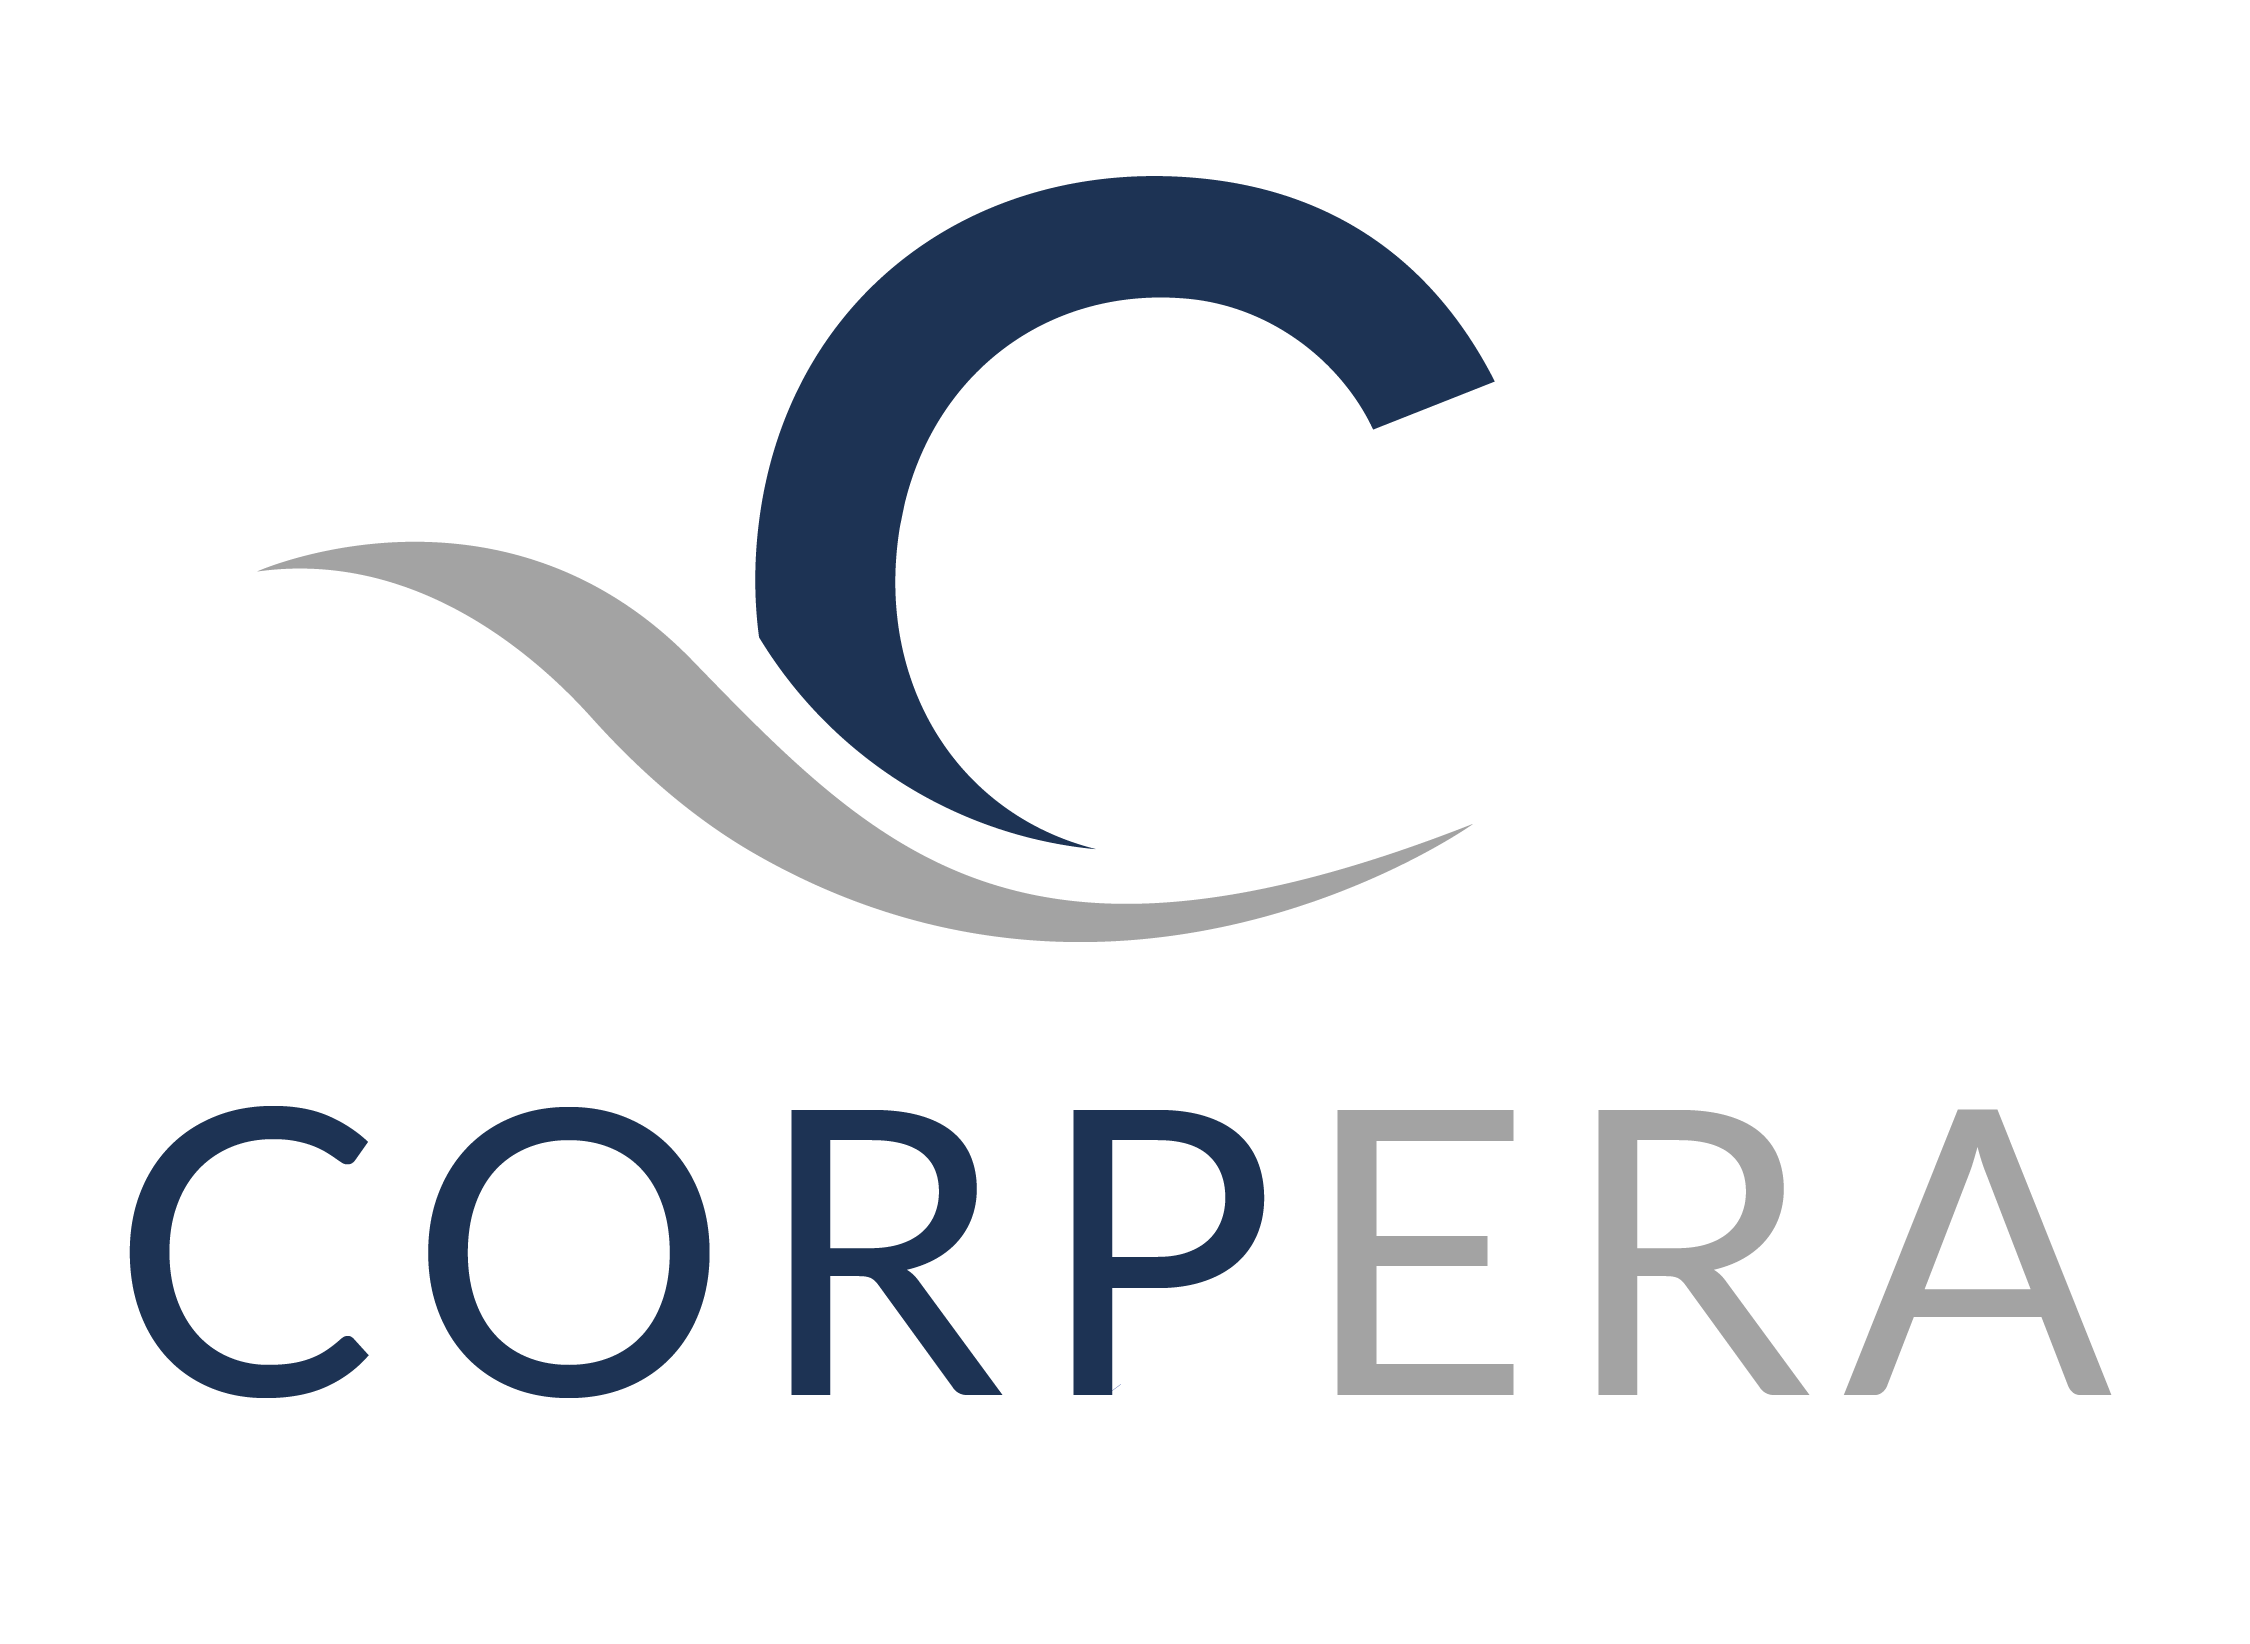 Corpera Ltd